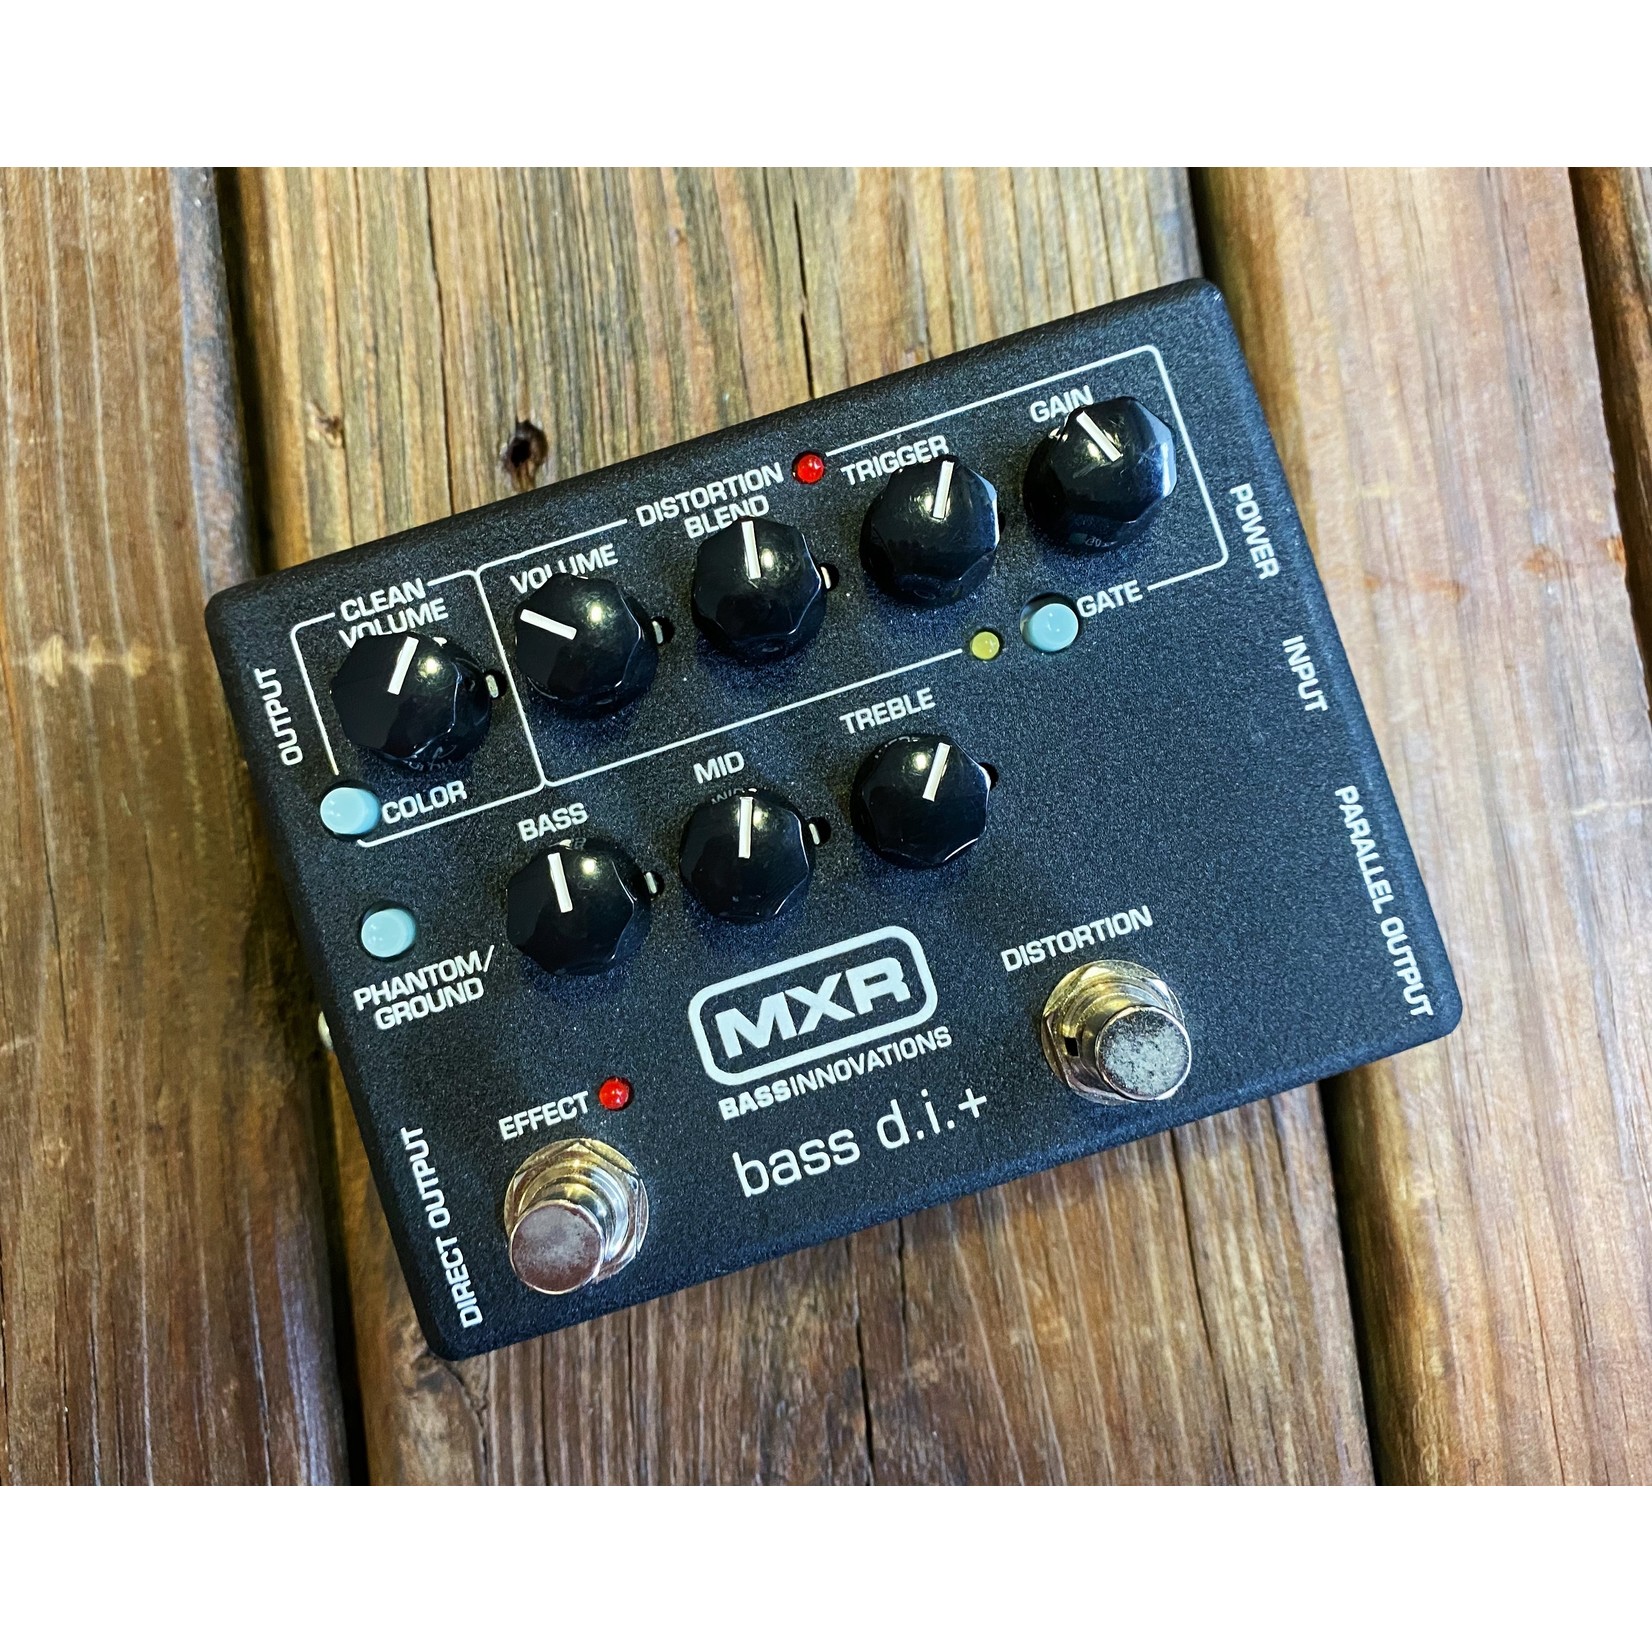 Used Gear USED MXR M80 Bass DI+